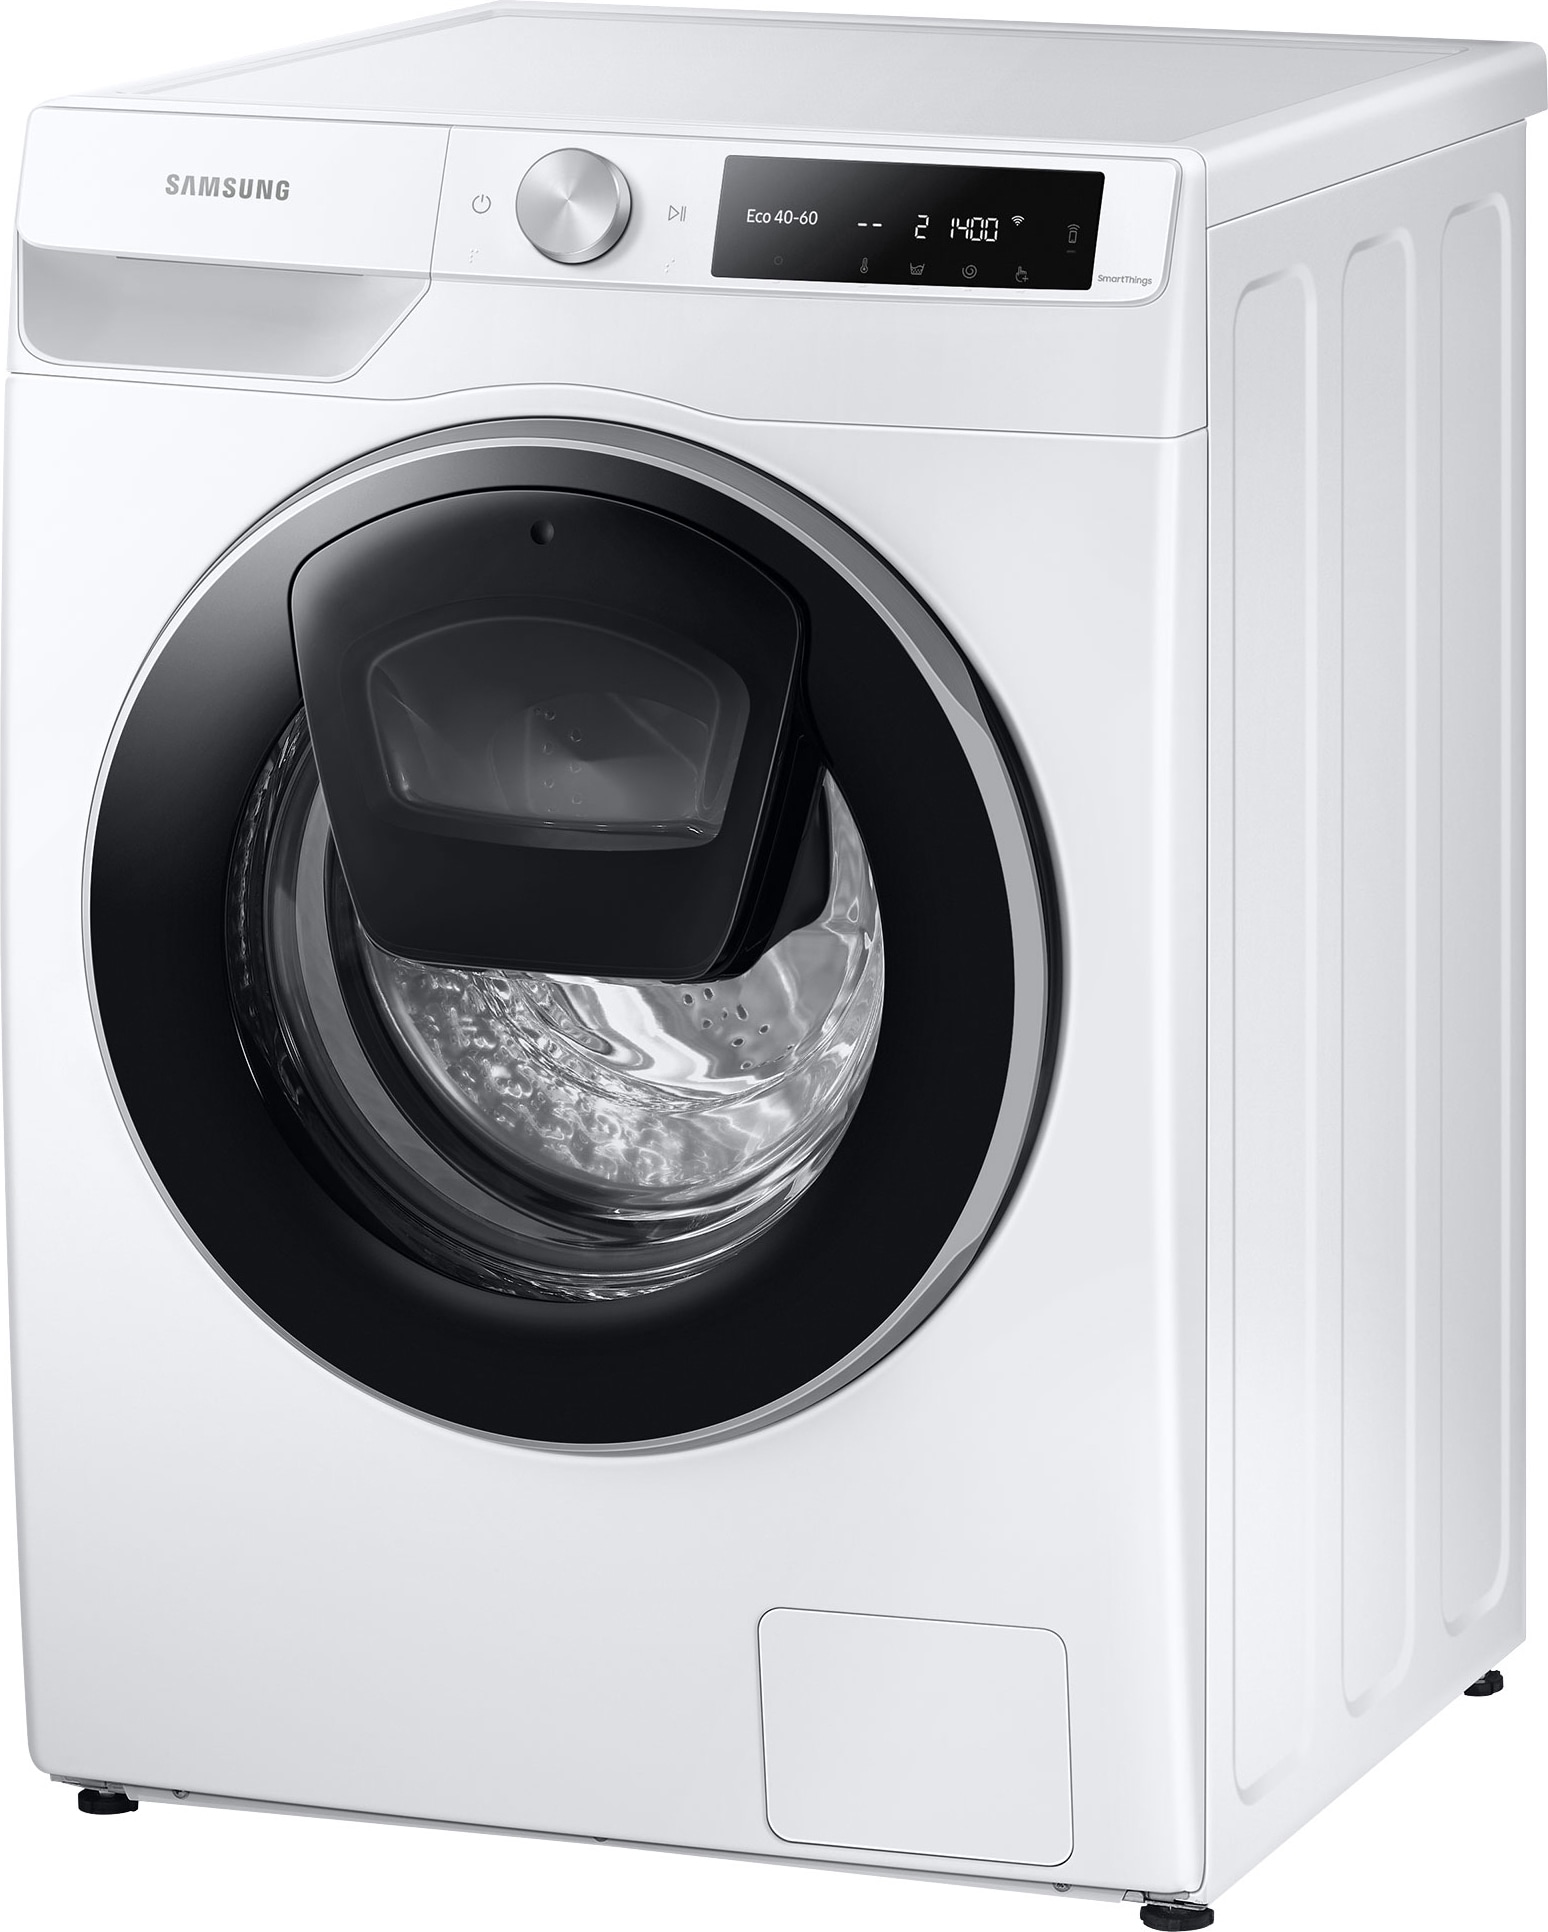 Køb Vaskemaskiner online til meget lav pris!